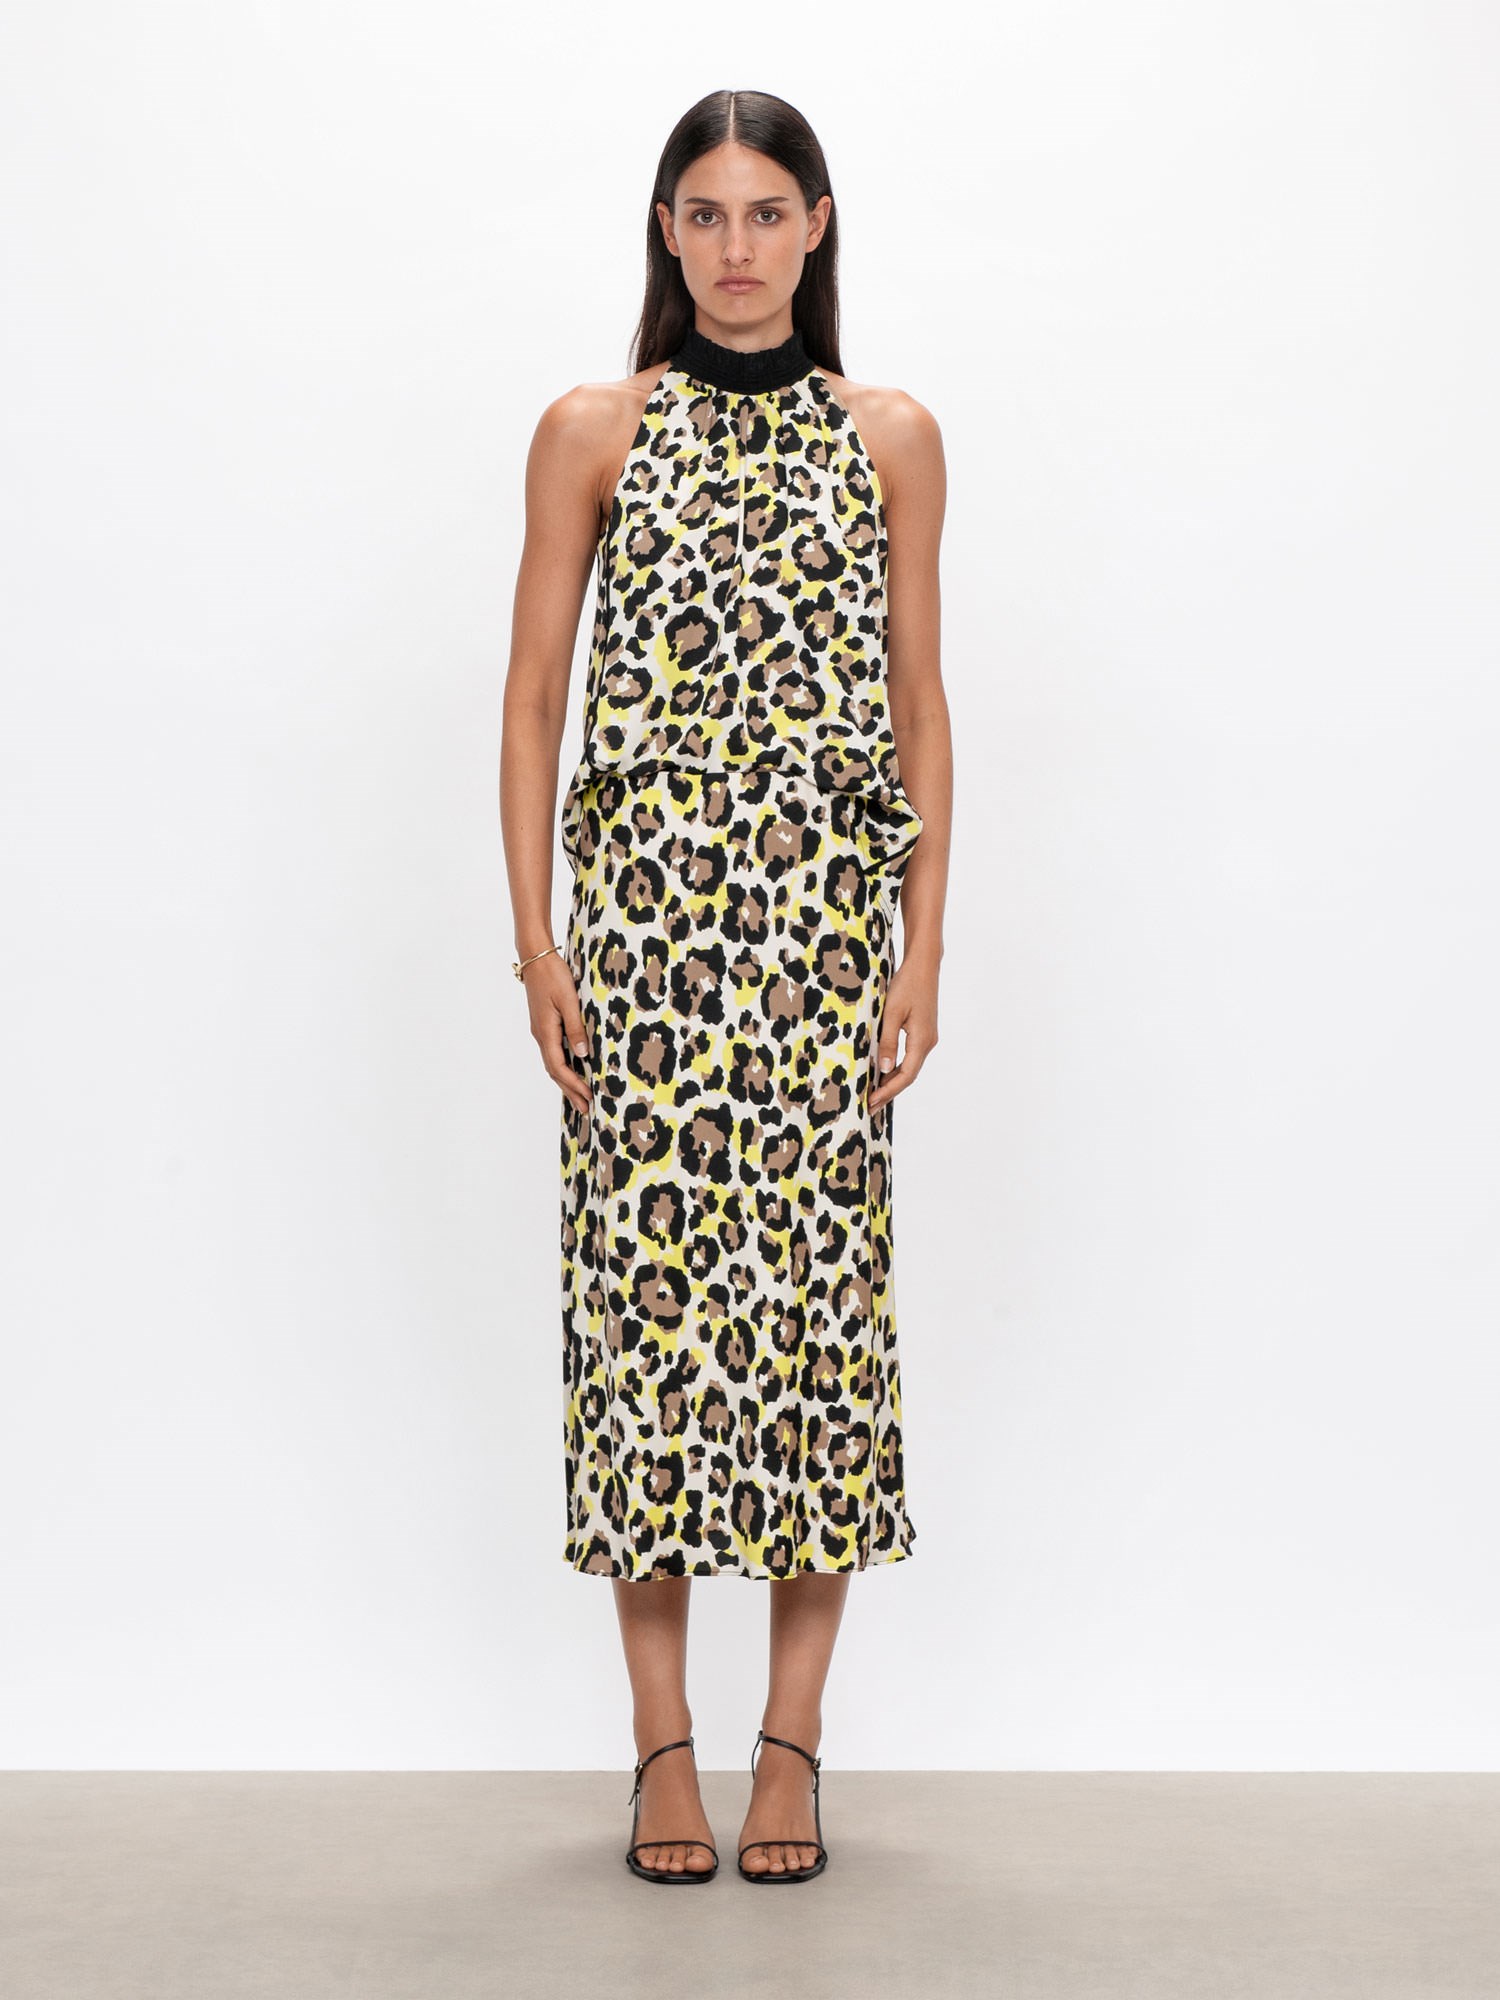 Citrus Leopard Sleeveless Top | Buy Tops Online - Veronika Maine